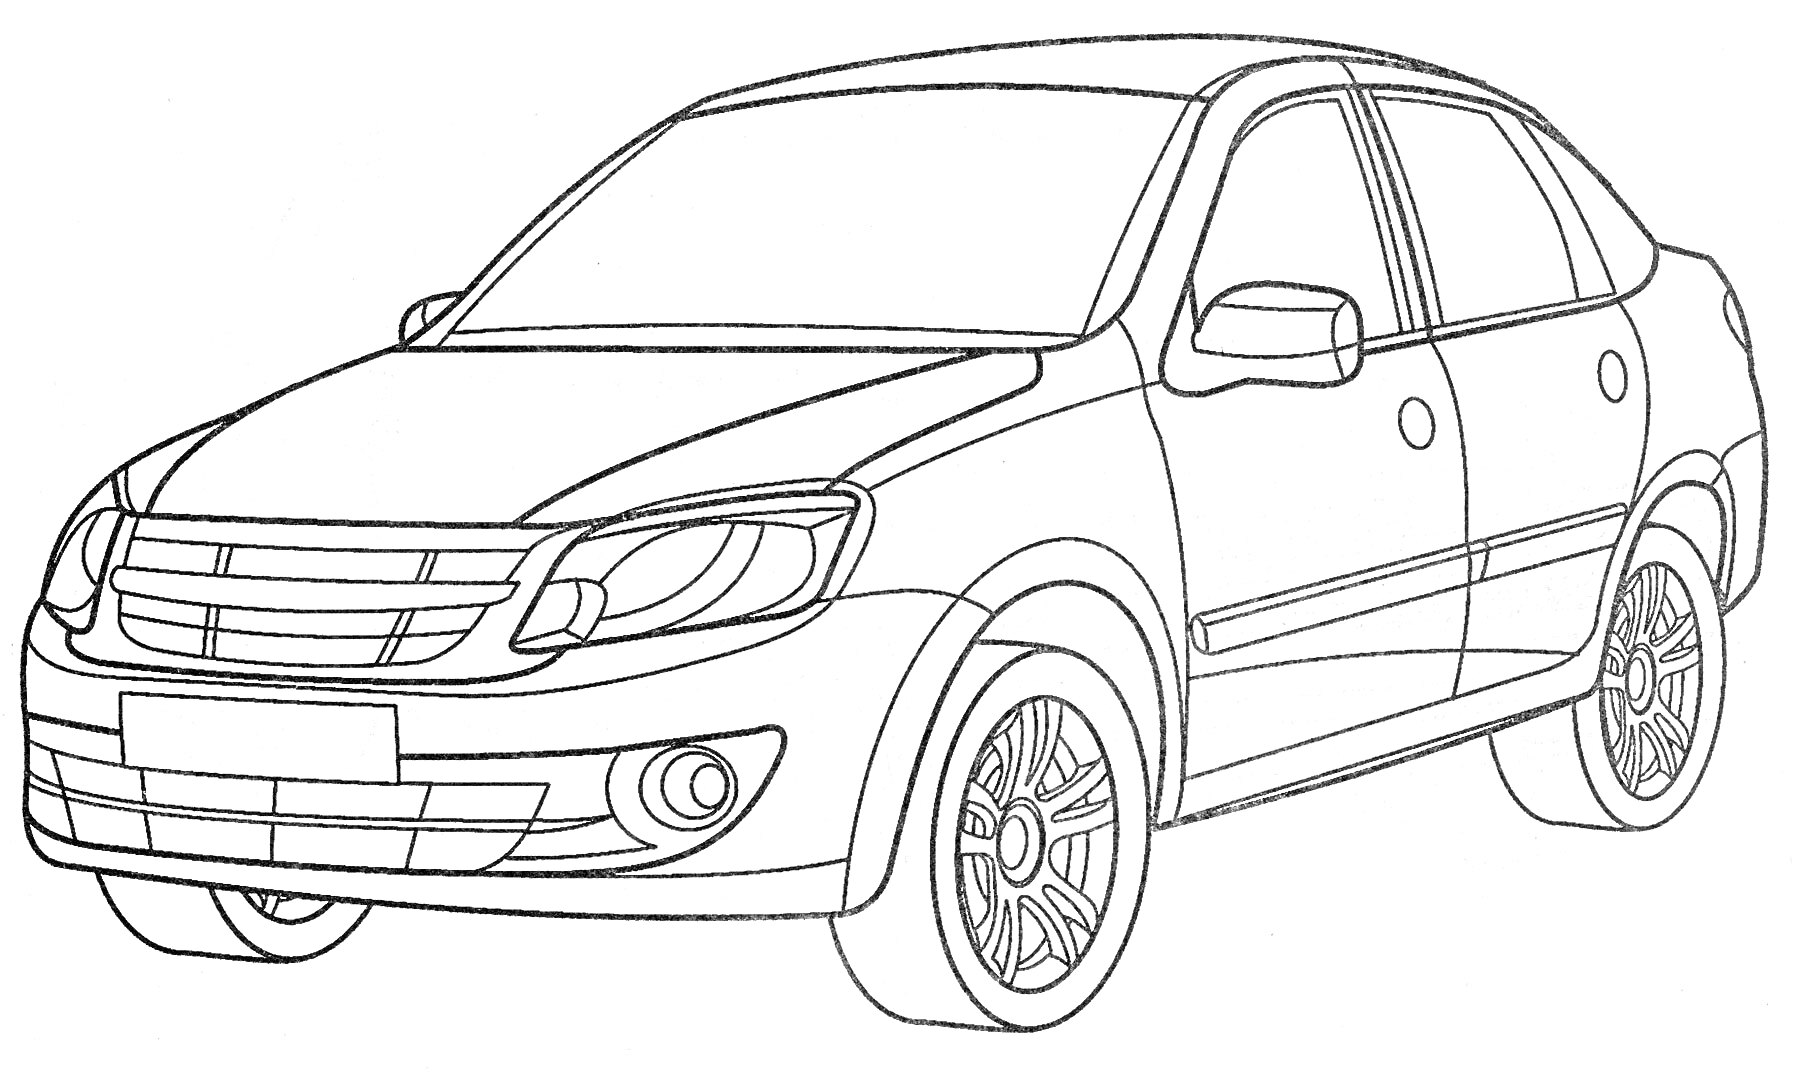 Лада - легковой автомобиль с характерными колесами, бамперами и фарами, боковые зеркала и дверные ручки